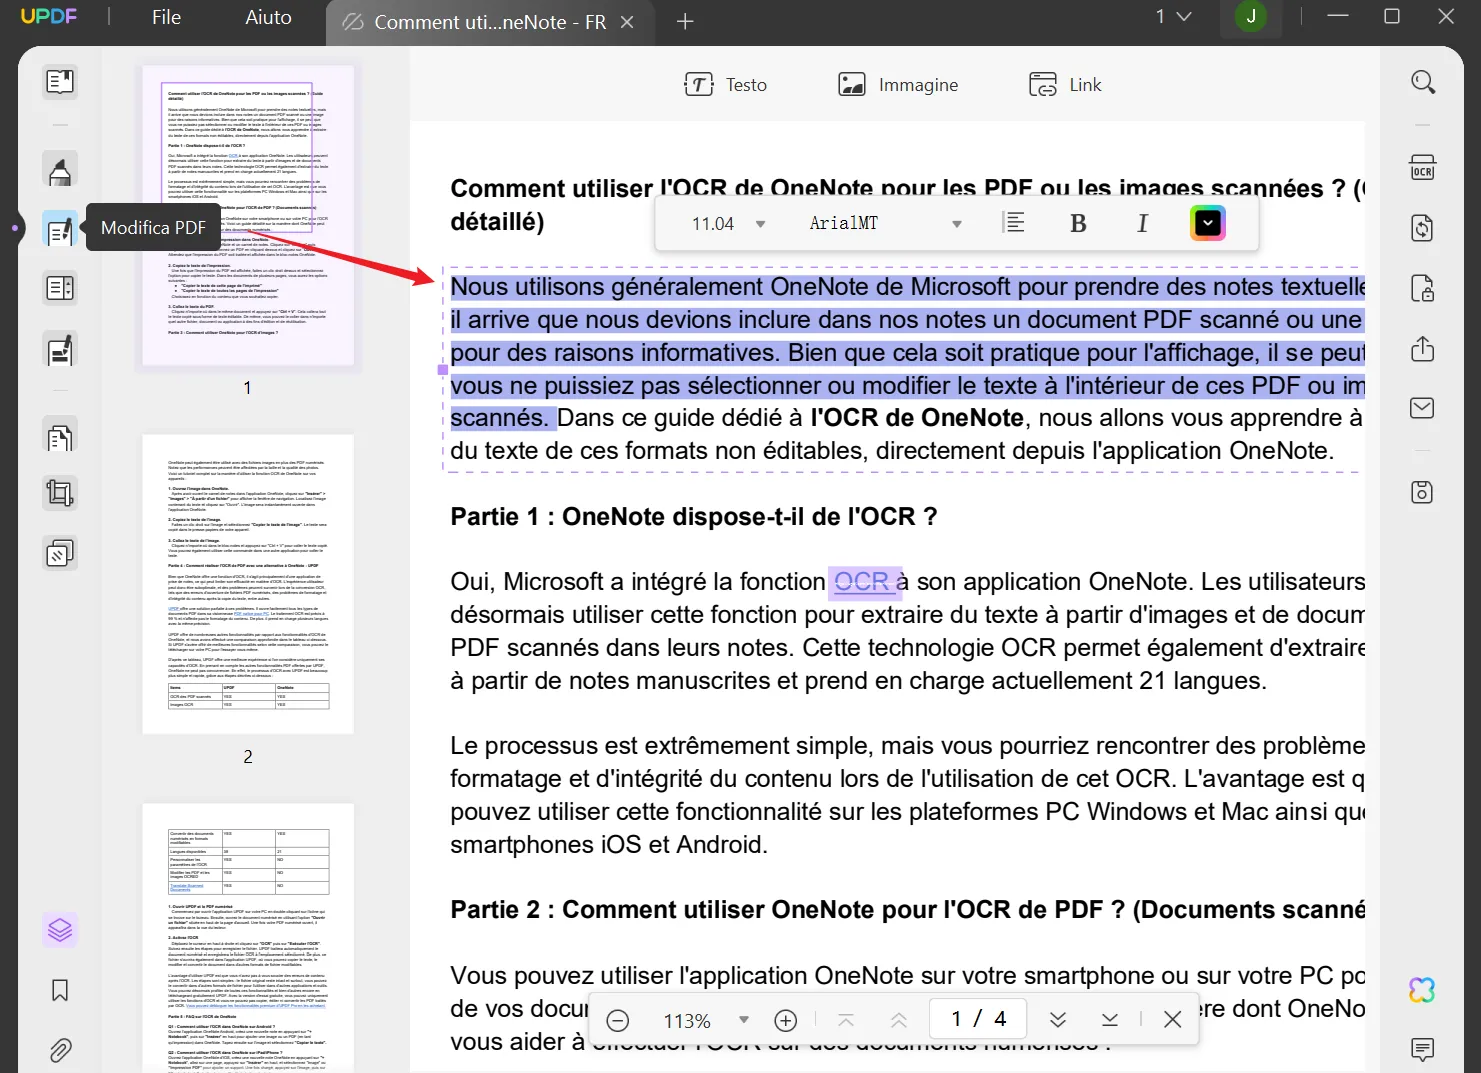 Traduci file PDF dal francese all'italiano tramite ChatGPT